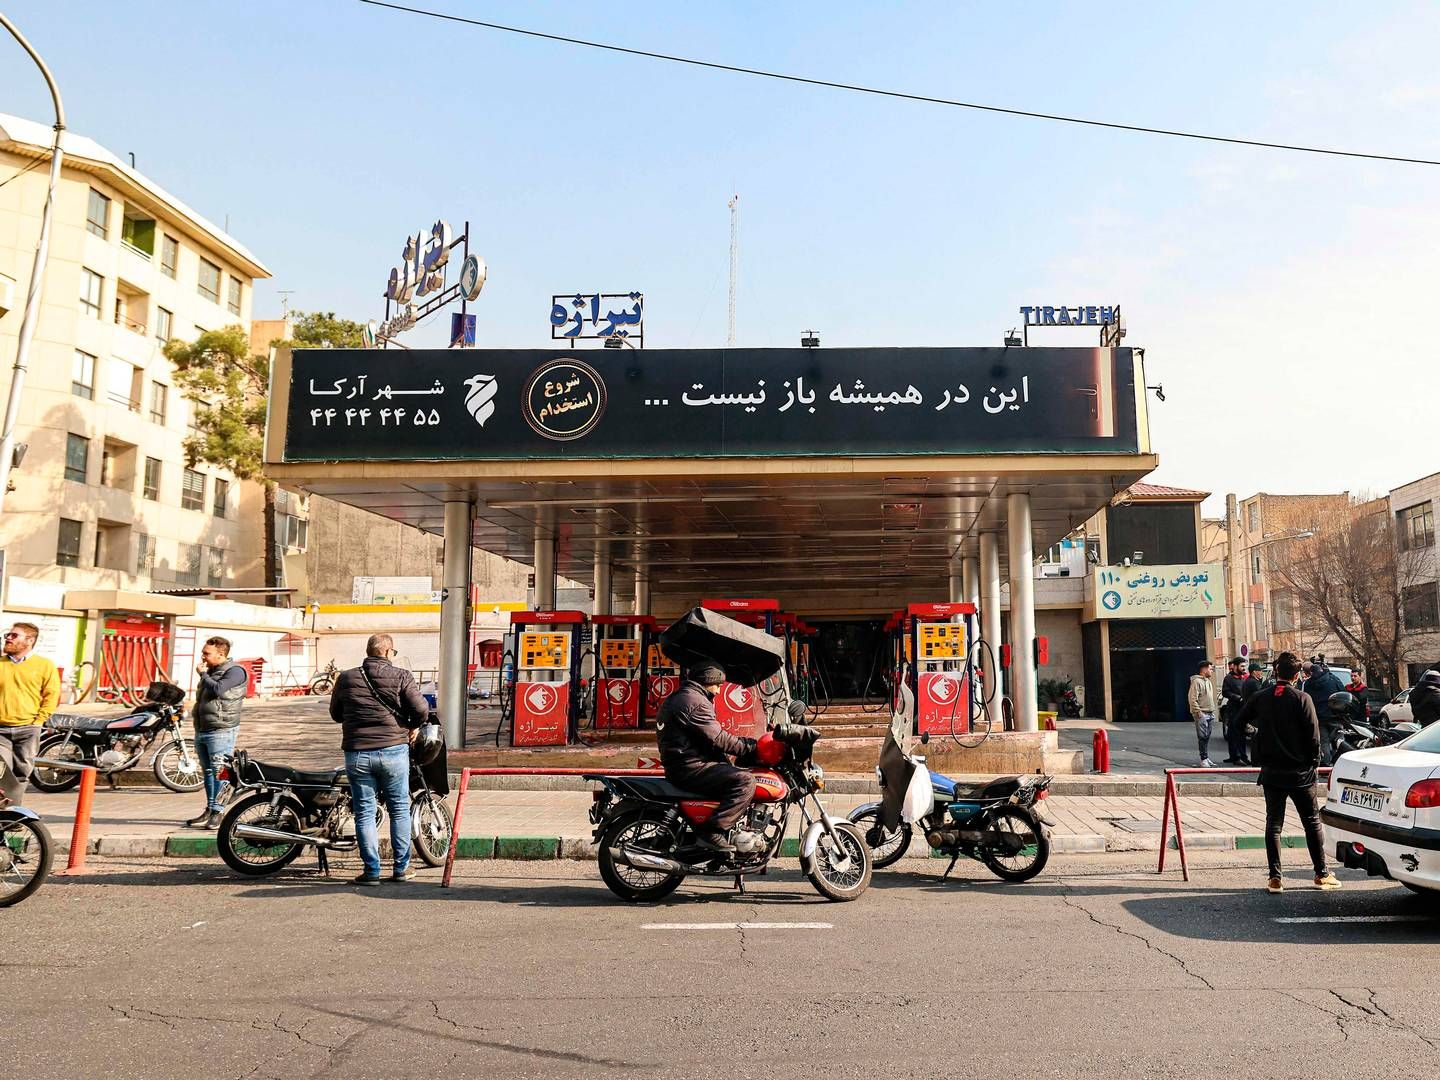 Folk venter ved en benzinstation i den iranske hovedstad Teheran, som i løbet af dagen har været ramt af driftsforstyrrelser grundet et muligt cyberangreb. Den iranske olieminister, Javad Owji, har ifølge iransk stats-tv sagt, at der har været forstyrrelser på 70 pct. af benzinstationerne i landet. | Foto: Atta Kenare